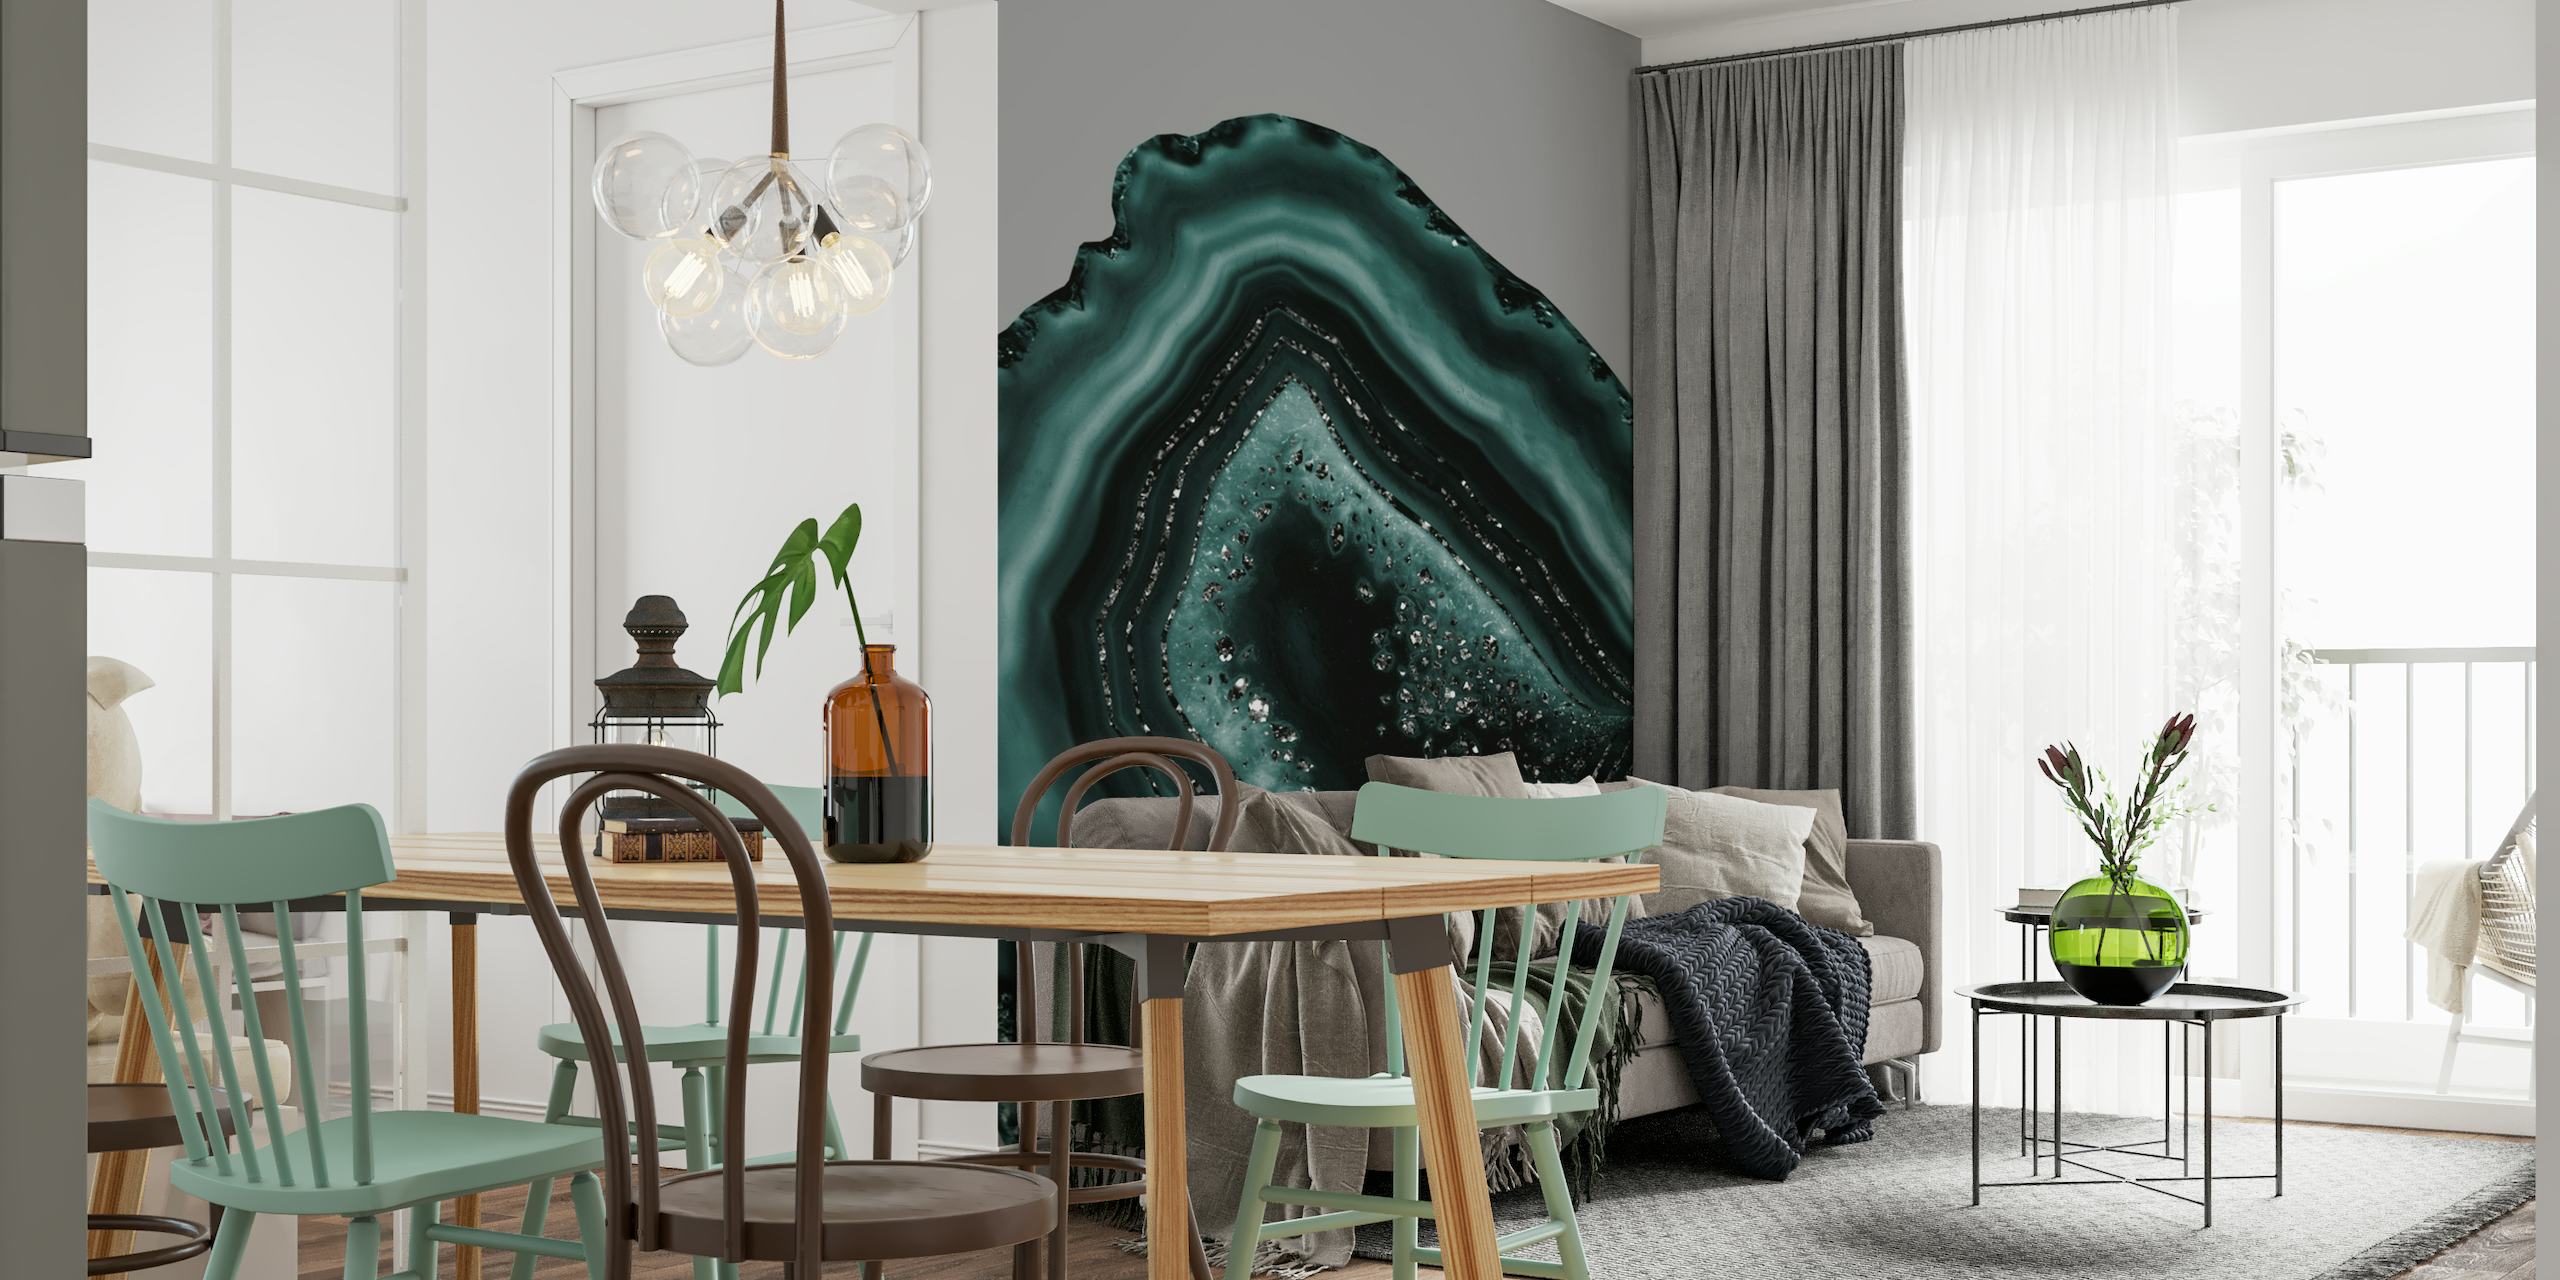 Blågrønt og sort agat-inspireret vægmaleri med glitteraccenter